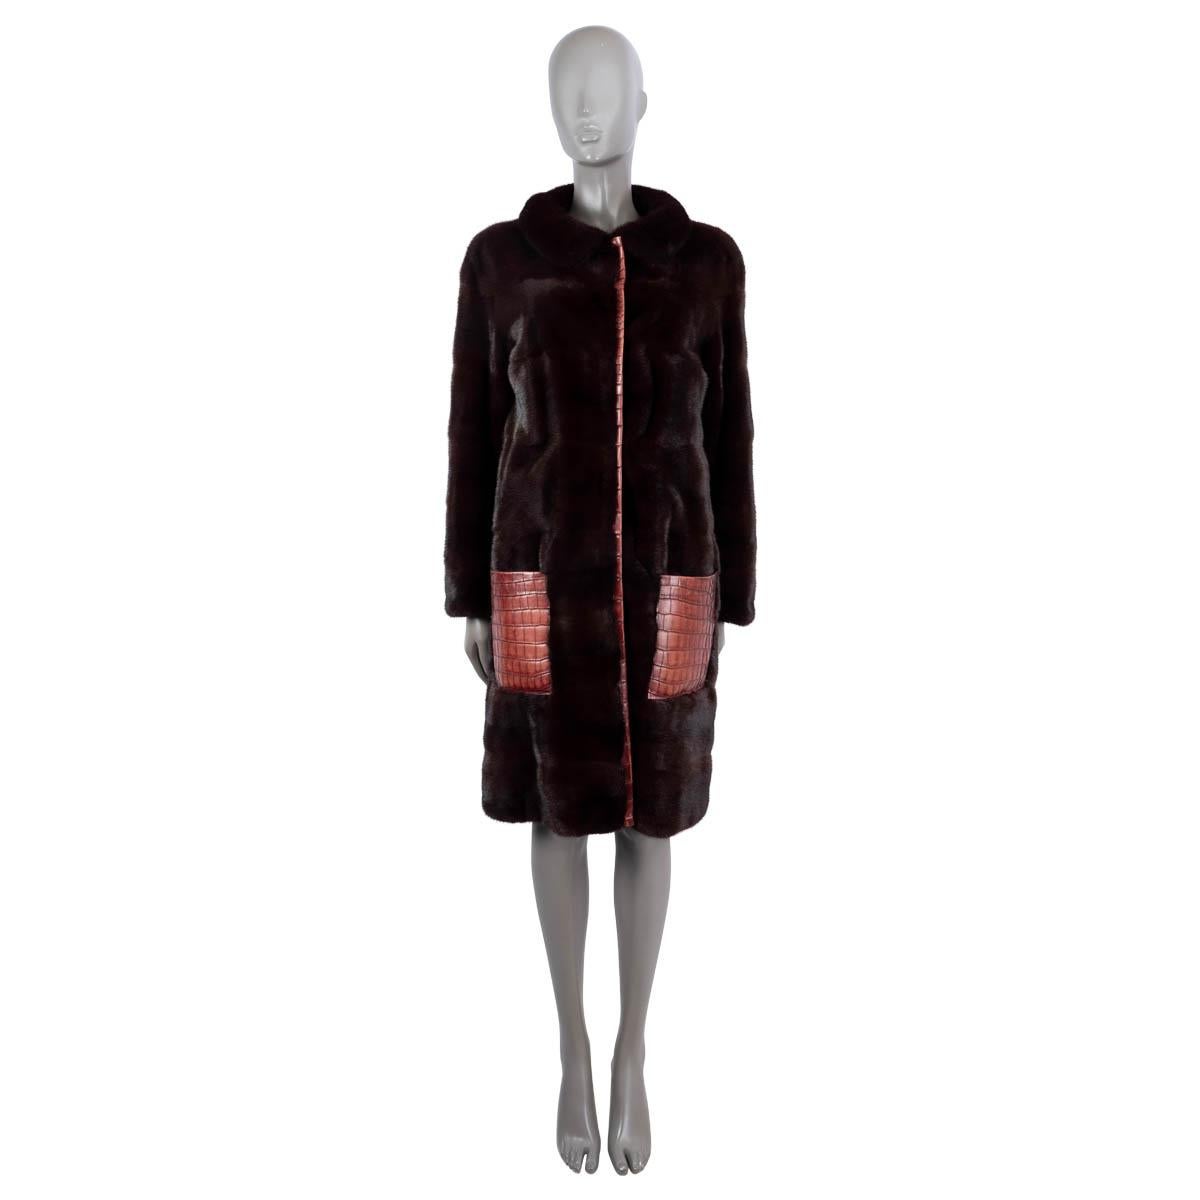 Manteau Christian Dior 100% authentique en fourrure de vison bordeaux (100%). Garniture et poches en crocodile rouge brique. Se ferme à l'aide de crochets dissimulés. Doublure en soie (100%). A été porté et est en excellent état.

Vendue au prix de